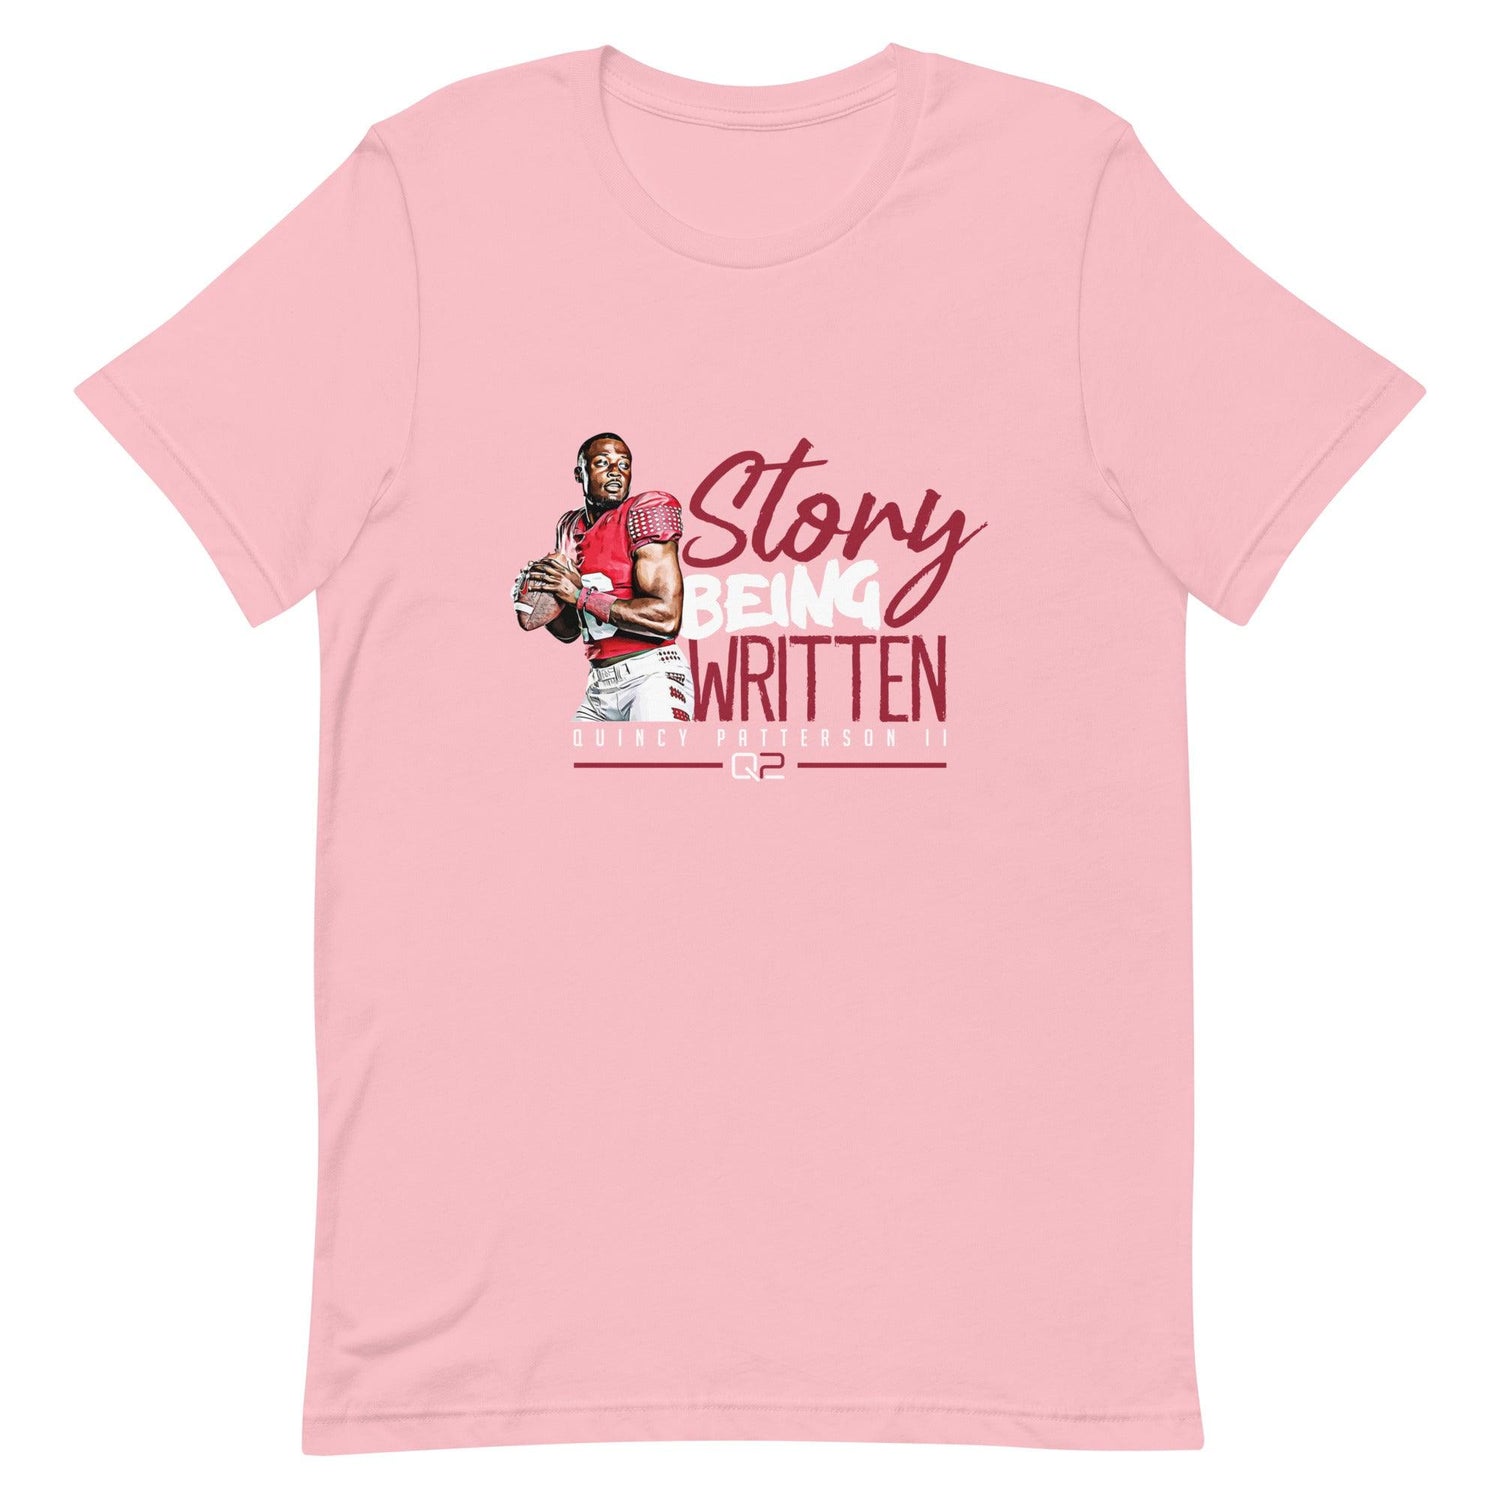 Quincy Patterson II "Being Written" t-shirt - Fan Arch